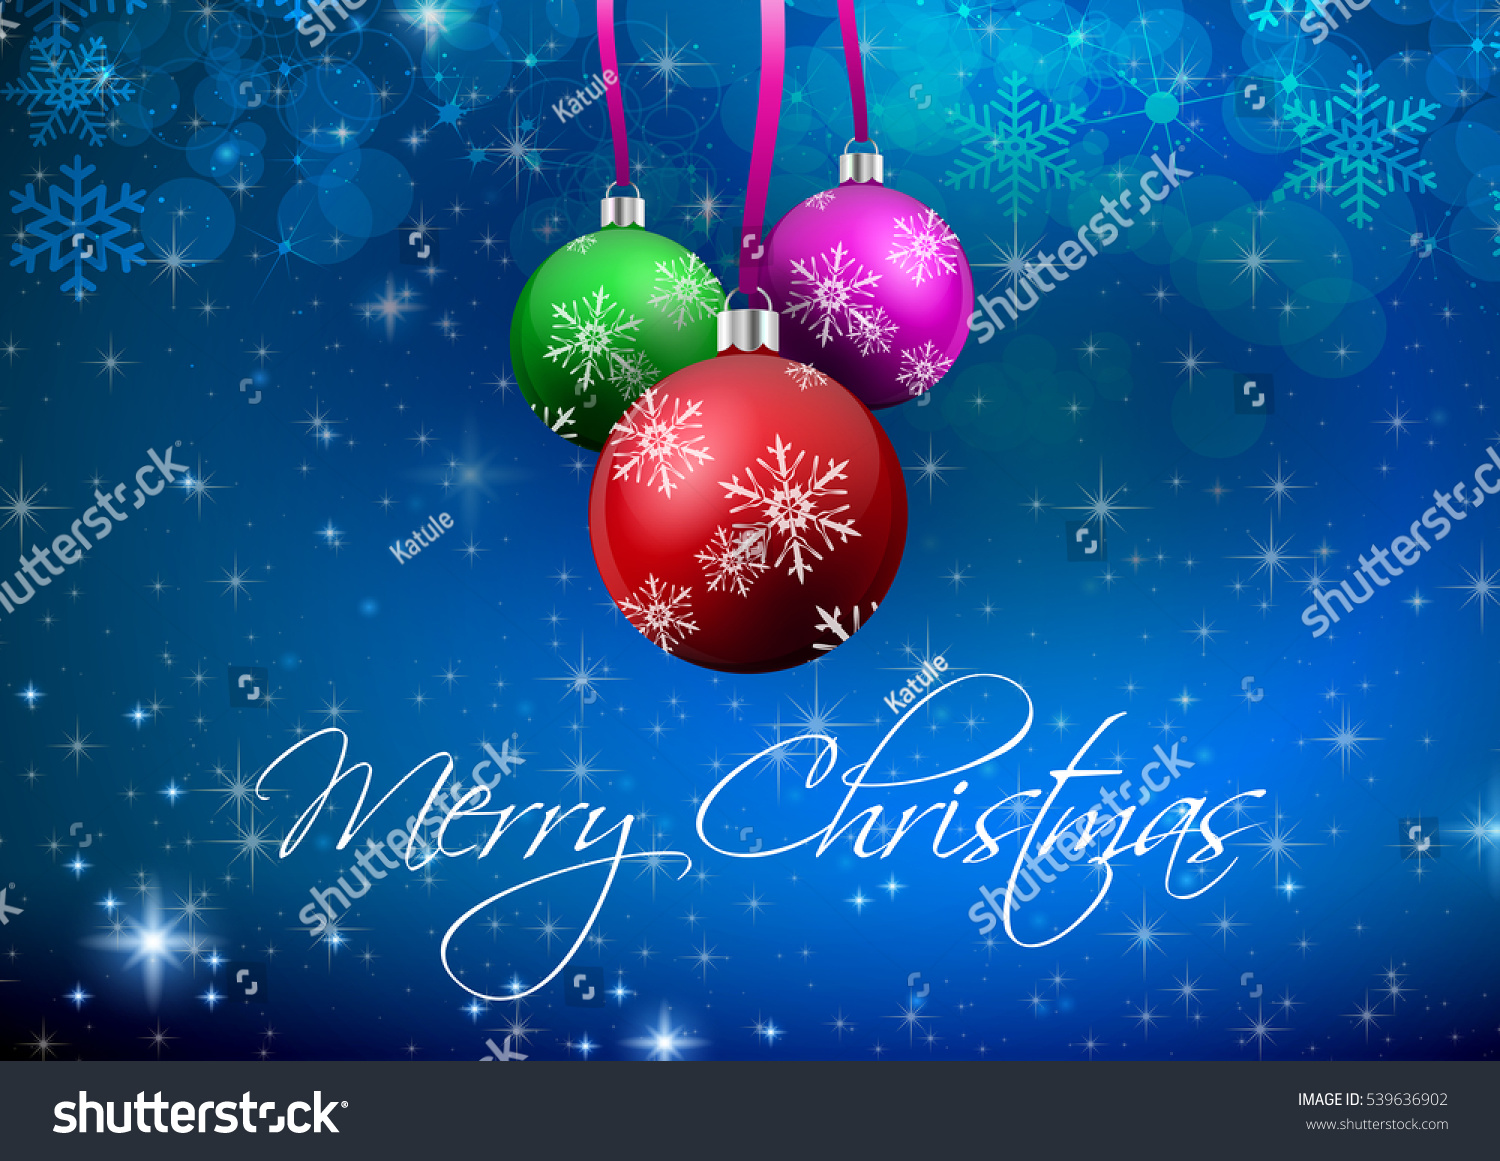 Merry Christmas Wallpaper Stock Illustration 539636902 - Shutterstock